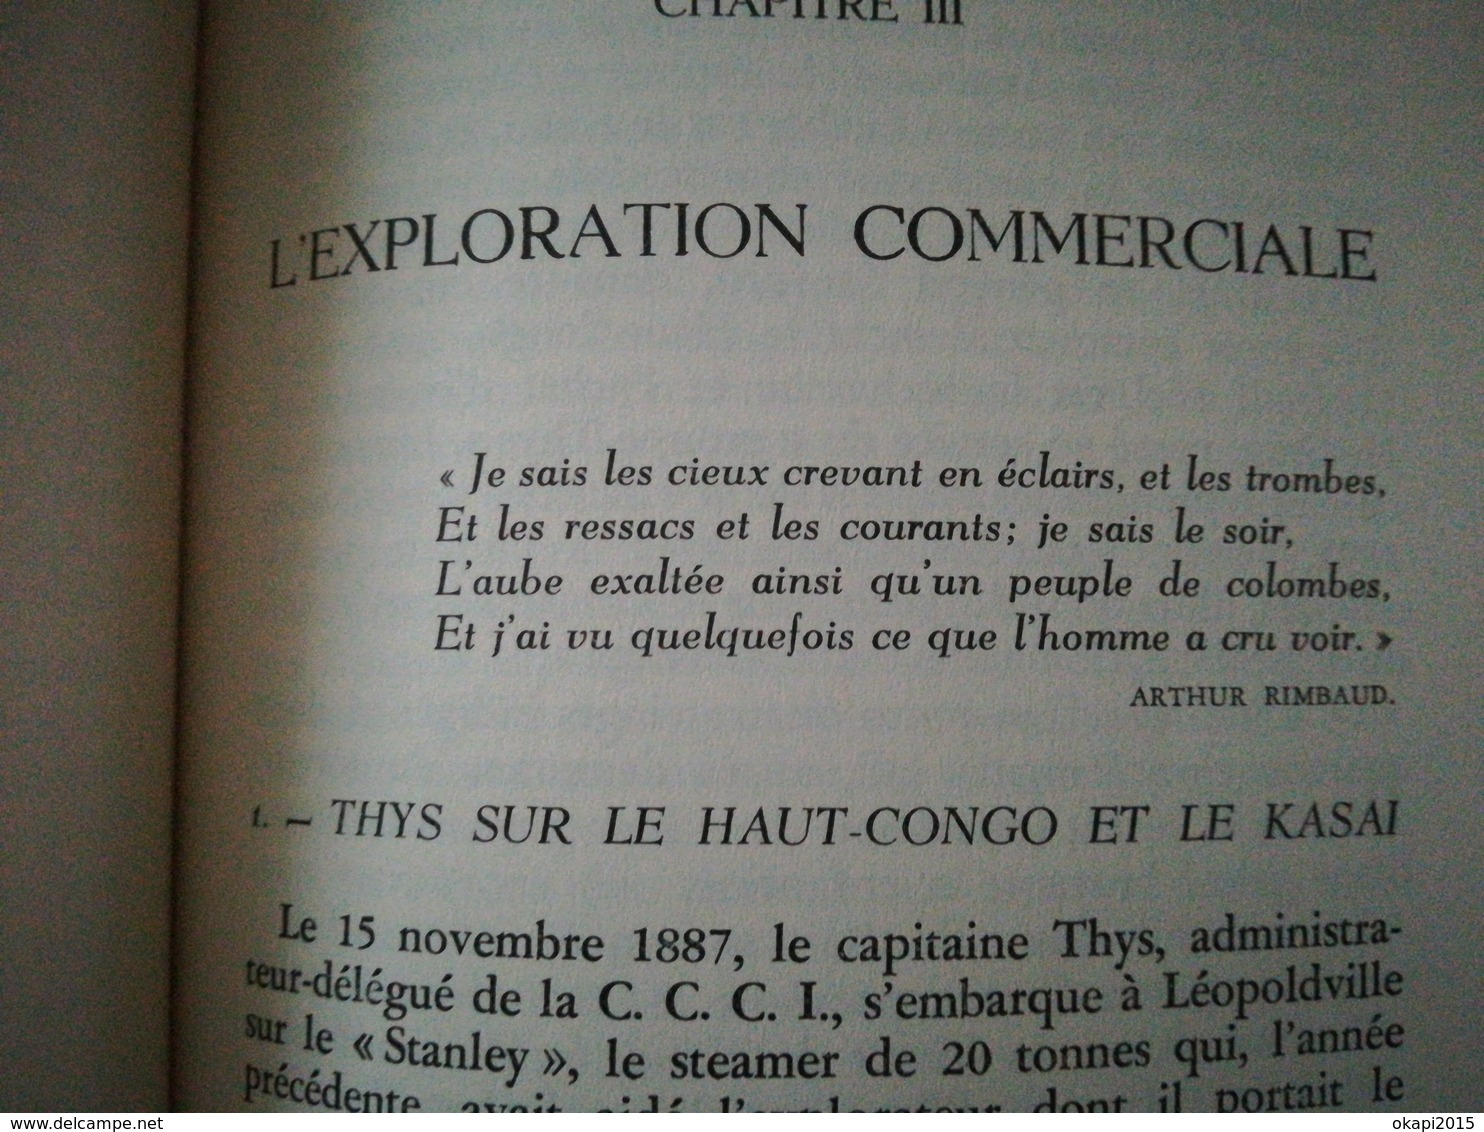 Construction du chemin de fer de  Matadi au Stanley  -  Pool  Congo Belge Colonie Belgique livres Histoire